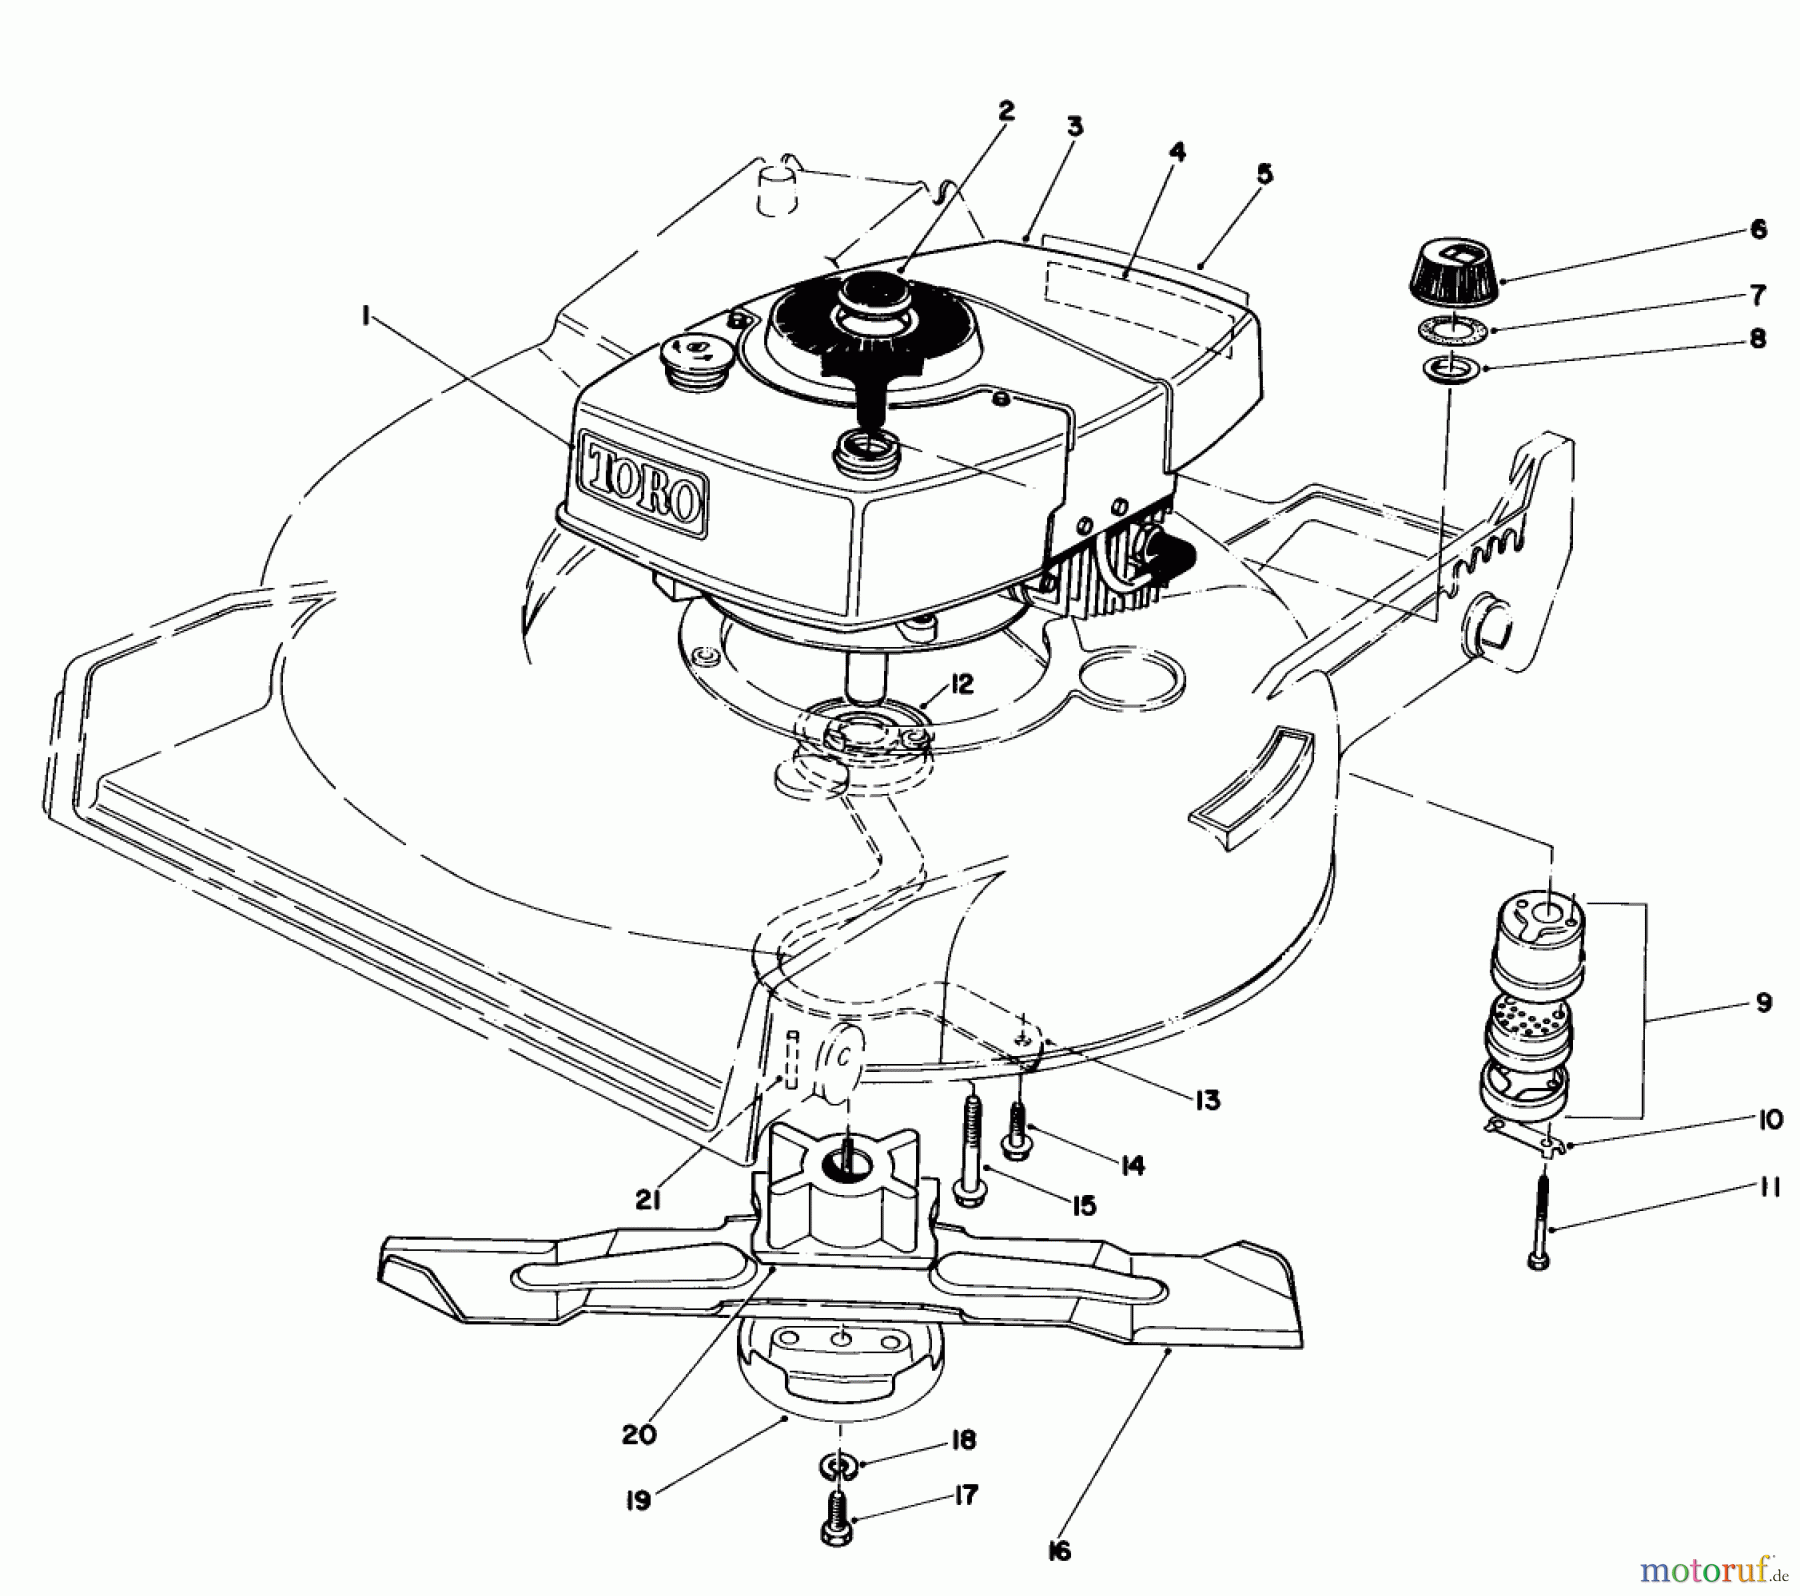  Toro Neu Mowers, Walk-Behind Seite 1 20810 - Toro Lawnmower, 1983 (3000001-3999999) ENGINE ASSEMBLY